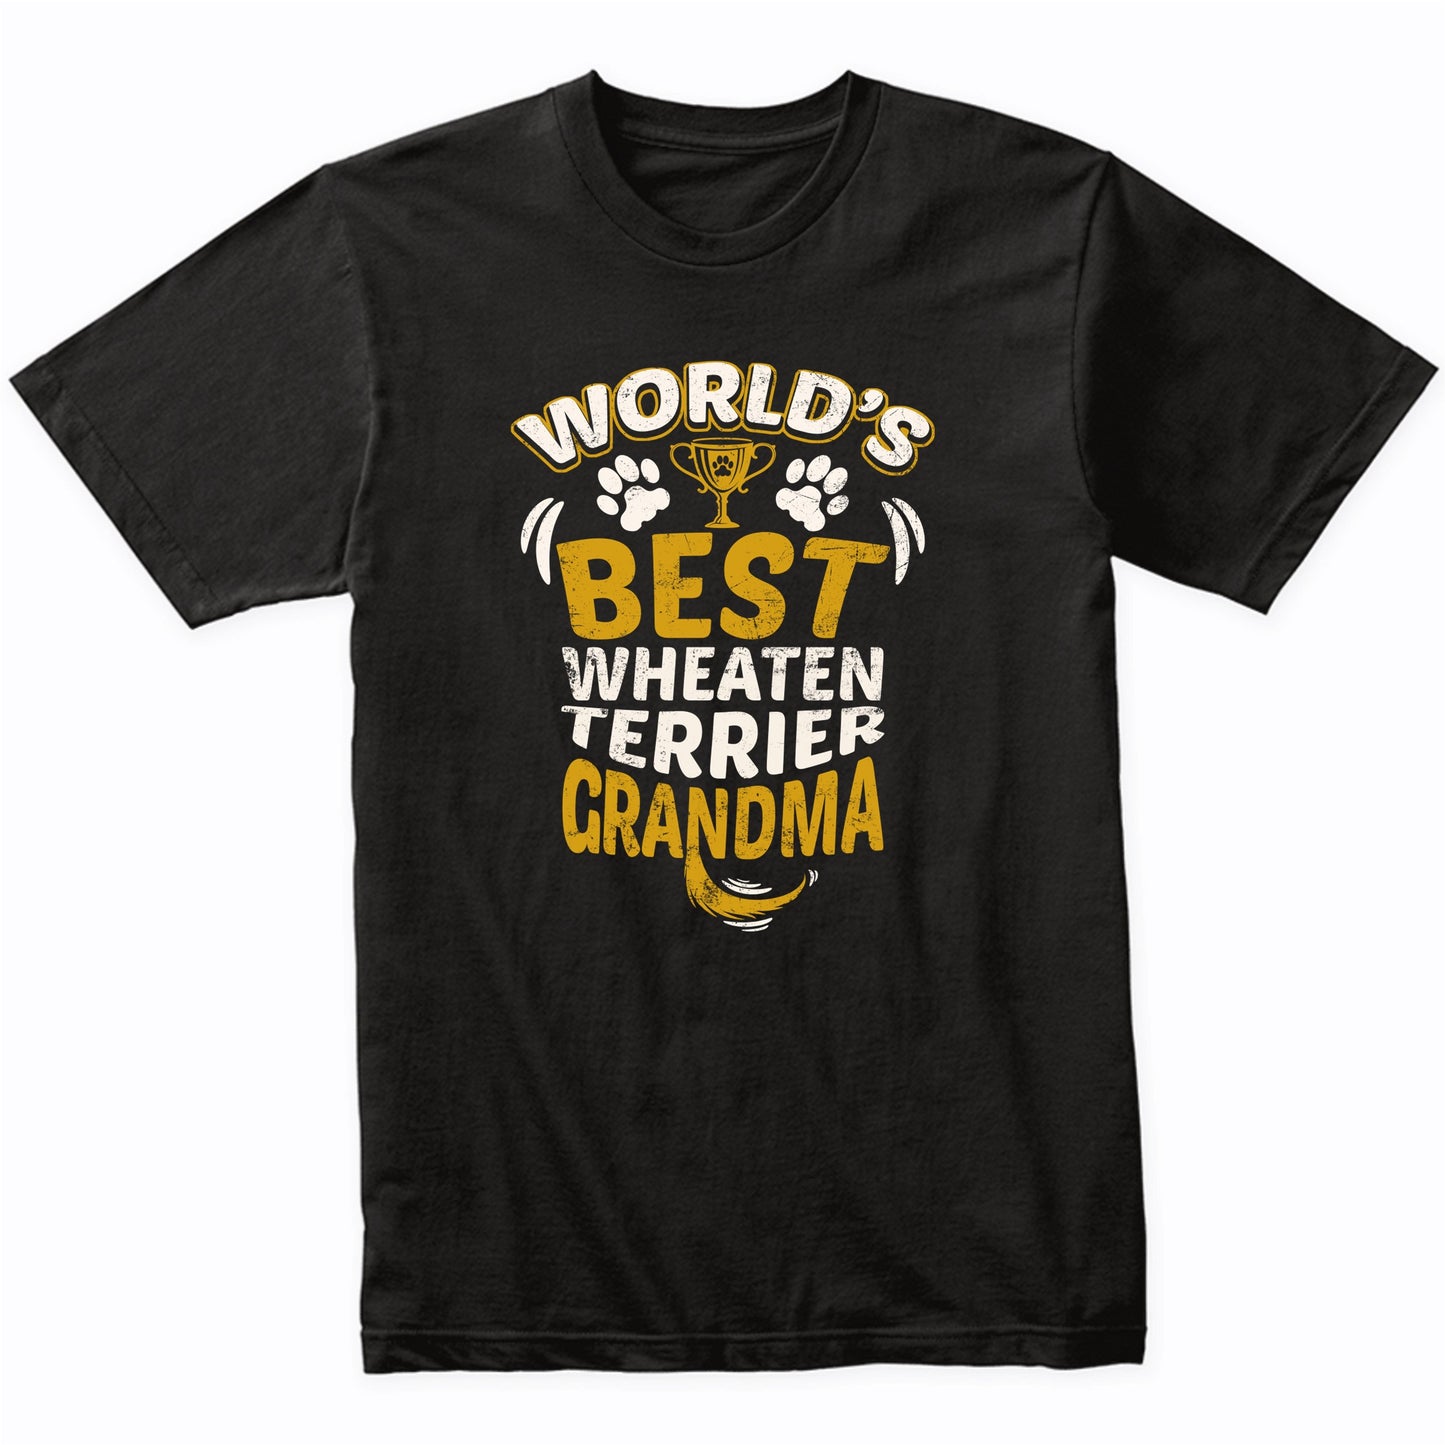 World's Best Wheaten Terrier Grandma Graphic T-Shirt